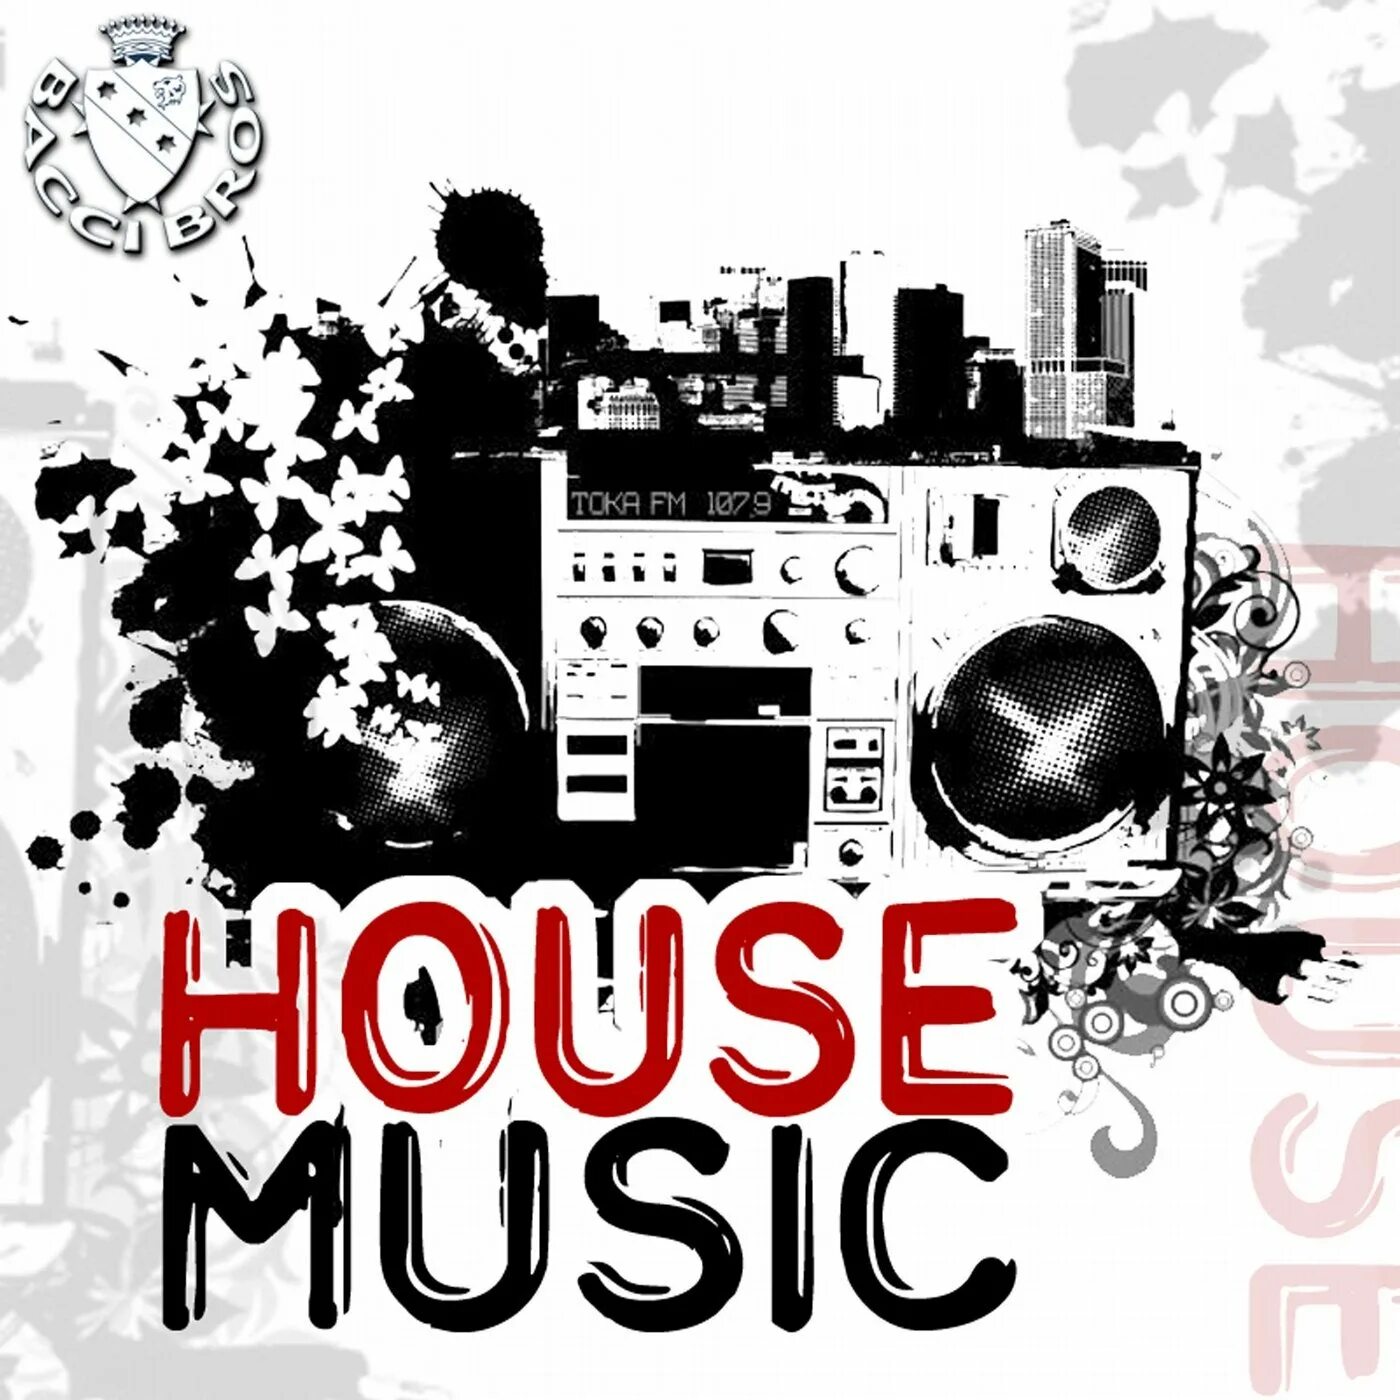 Музыкальный стиль House. House Music картинки. Хаус Жанр. Музыкальный стиль Хаус в рисунках. Песня house music